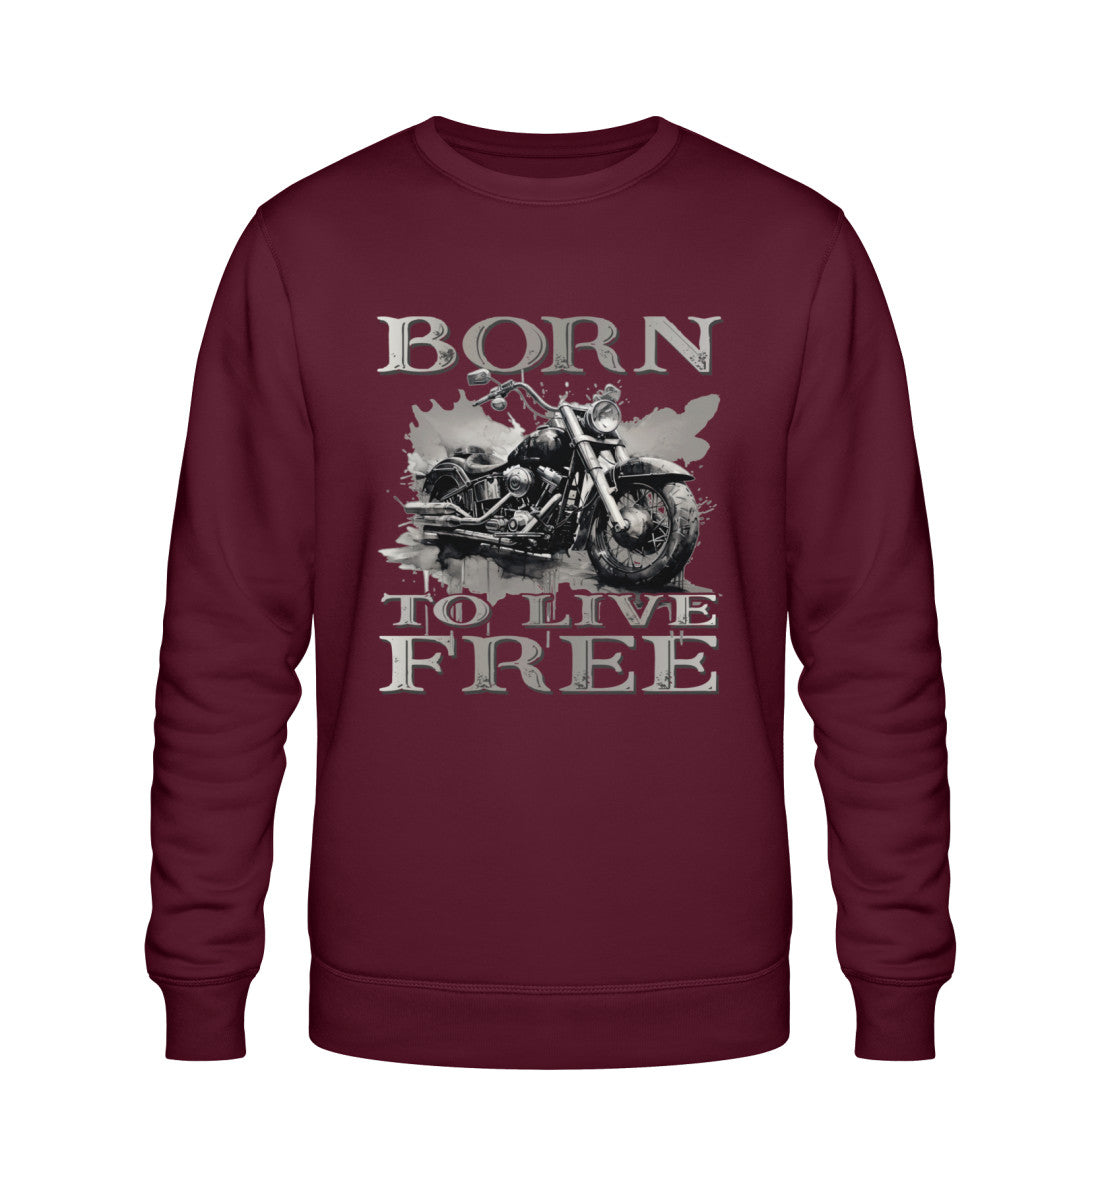 Ein Biker Sweatshirt für Motorradfahrer von Wingbikers mit dem Aufdruck,  Born to Live Free, in burgunder weinrot.  